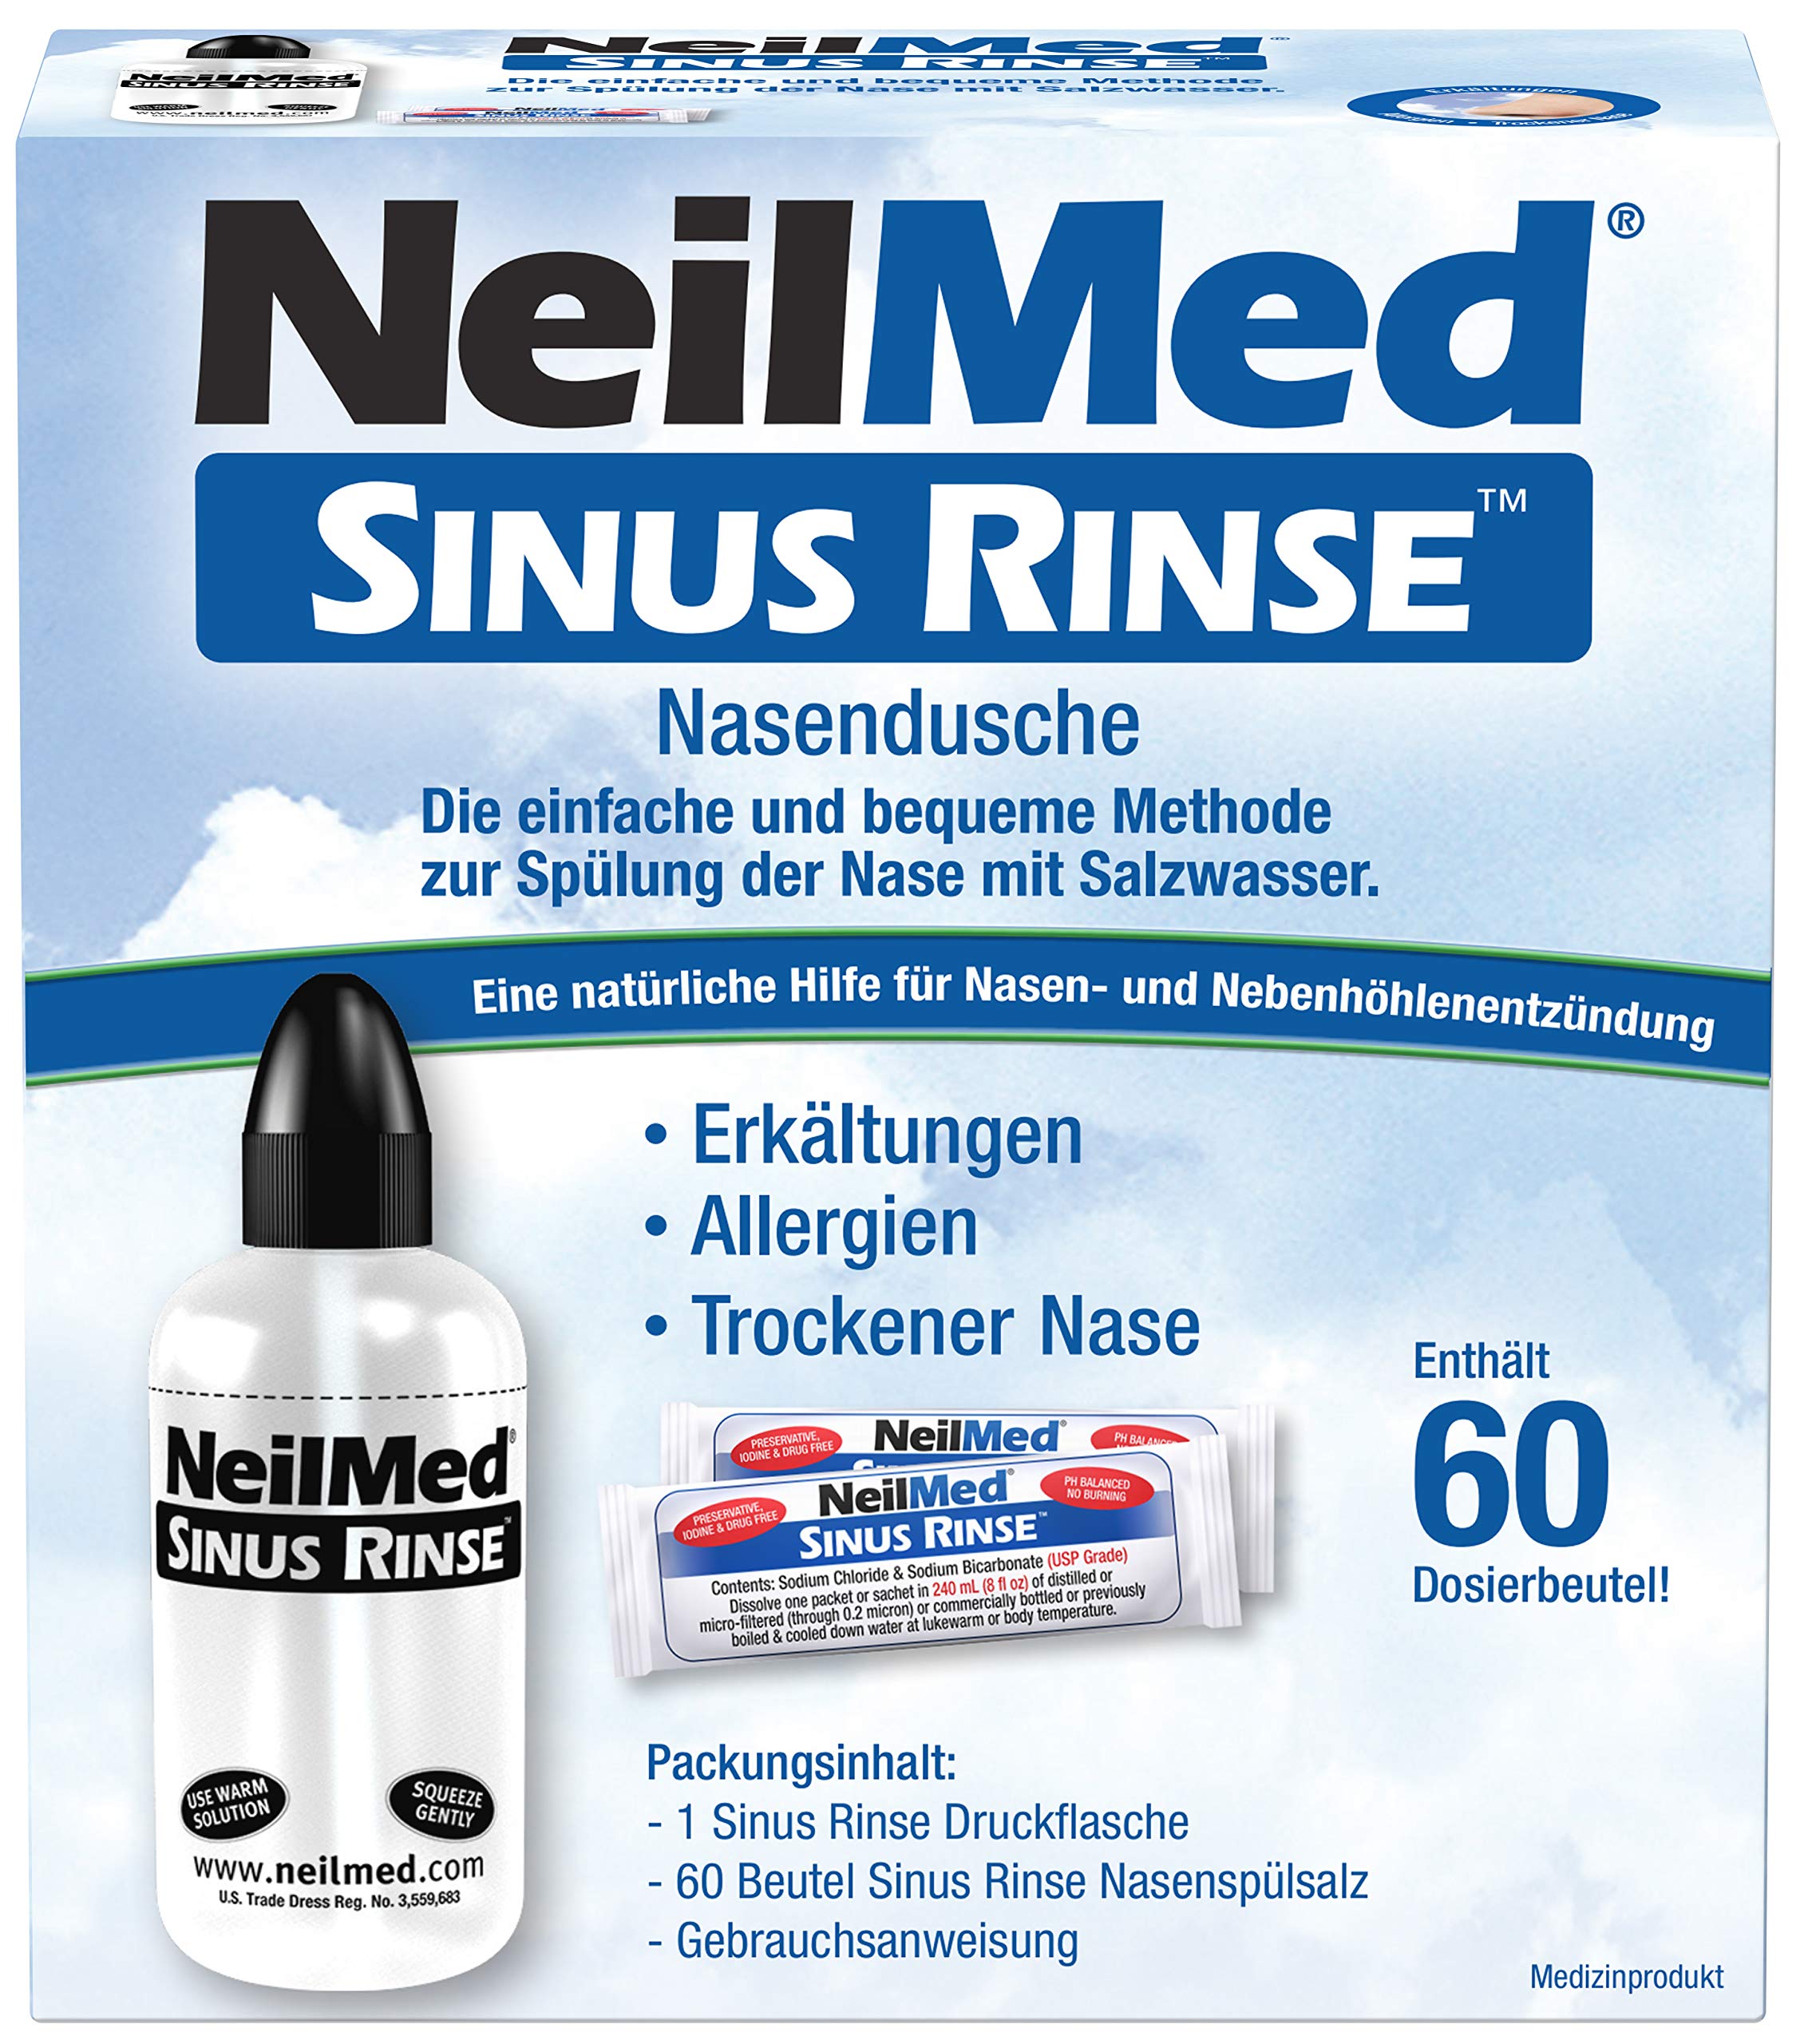 NeilMed Nasendusche hilft bei Erkältungen, verstopfter Nase und Allergien, sofort lieferbar mit 60 Portionen Salz